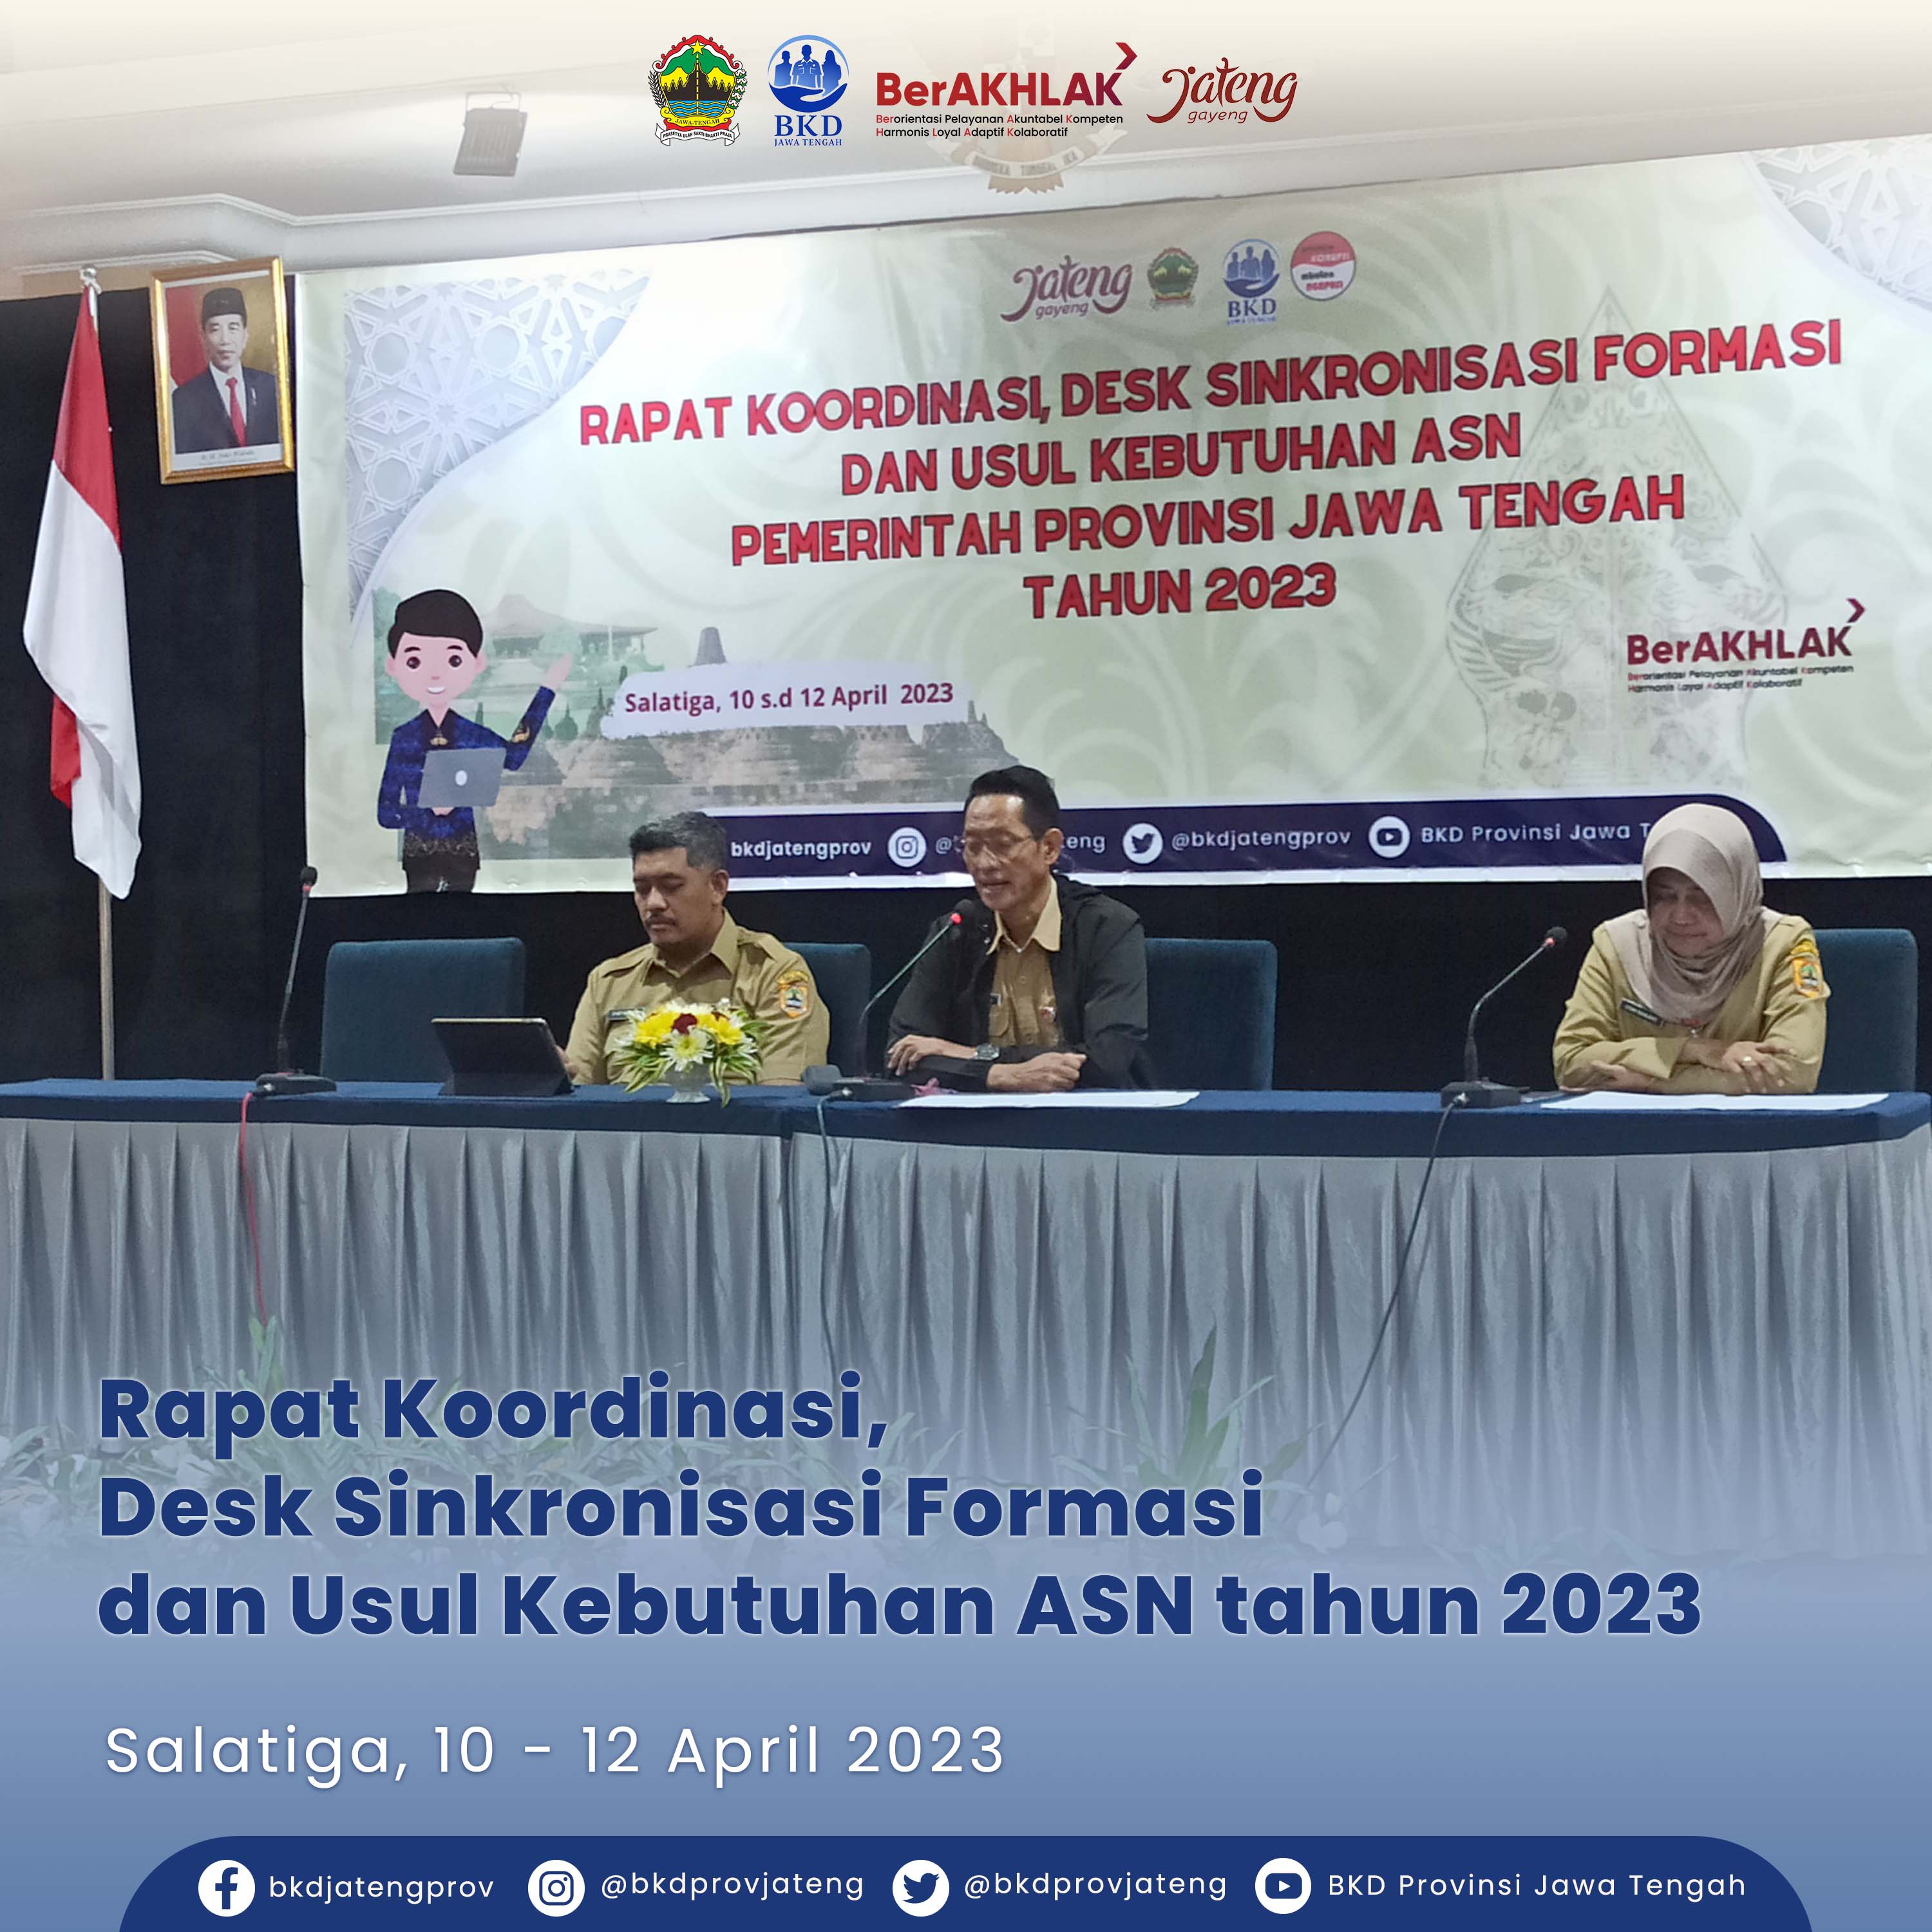 Rapat Koordinasi Desk Sinkronisasi Formasi dan Usul Kebutuhan ASN Pemerintah Provinsi Jawa Tengah Tahun 2023